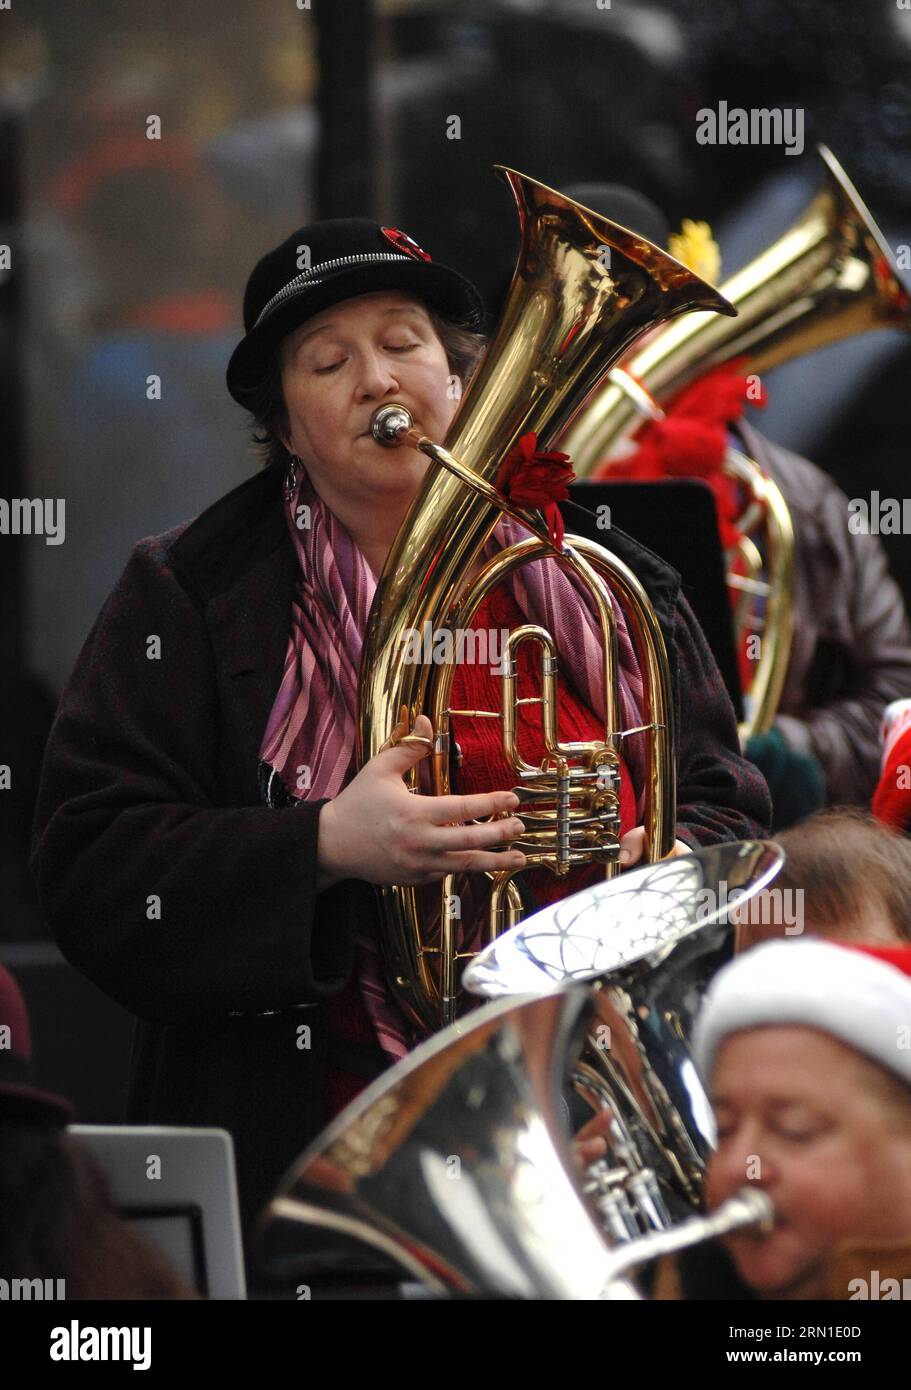 Ein Tuba-Spieler spielt Weihnachtslieder und Lieder während der 41. Jährlichen Tuba Christmas 2014-Veranstaltung neben der Robson Square Eislaufbahn in Vancouver, Kanada, am 21. Dezember 2014. Diese ungewöhnliche Weihnachtstradition hat sich in über 200 Städten auf der ganzen Welt etabliert. Die erste Tuba-Weihnachtsveranstaltung wurde 1974 im Rockefeller Center in New York präsentiert und wurde von Harvey Phillips zu Ehren seines Lehrers, dem verstorbenen William J. Bell, konzipiert. )(zhf) CANANDA-VANCOUVER-CHRISTMAS-TUBA SergeixBachlakov PUBLICATIONxNOTxINxCHN ein Tuba-Spieler spielt Weihnachtslieder und Lieder während der 41. Jährlichen Tuba Stockfoto